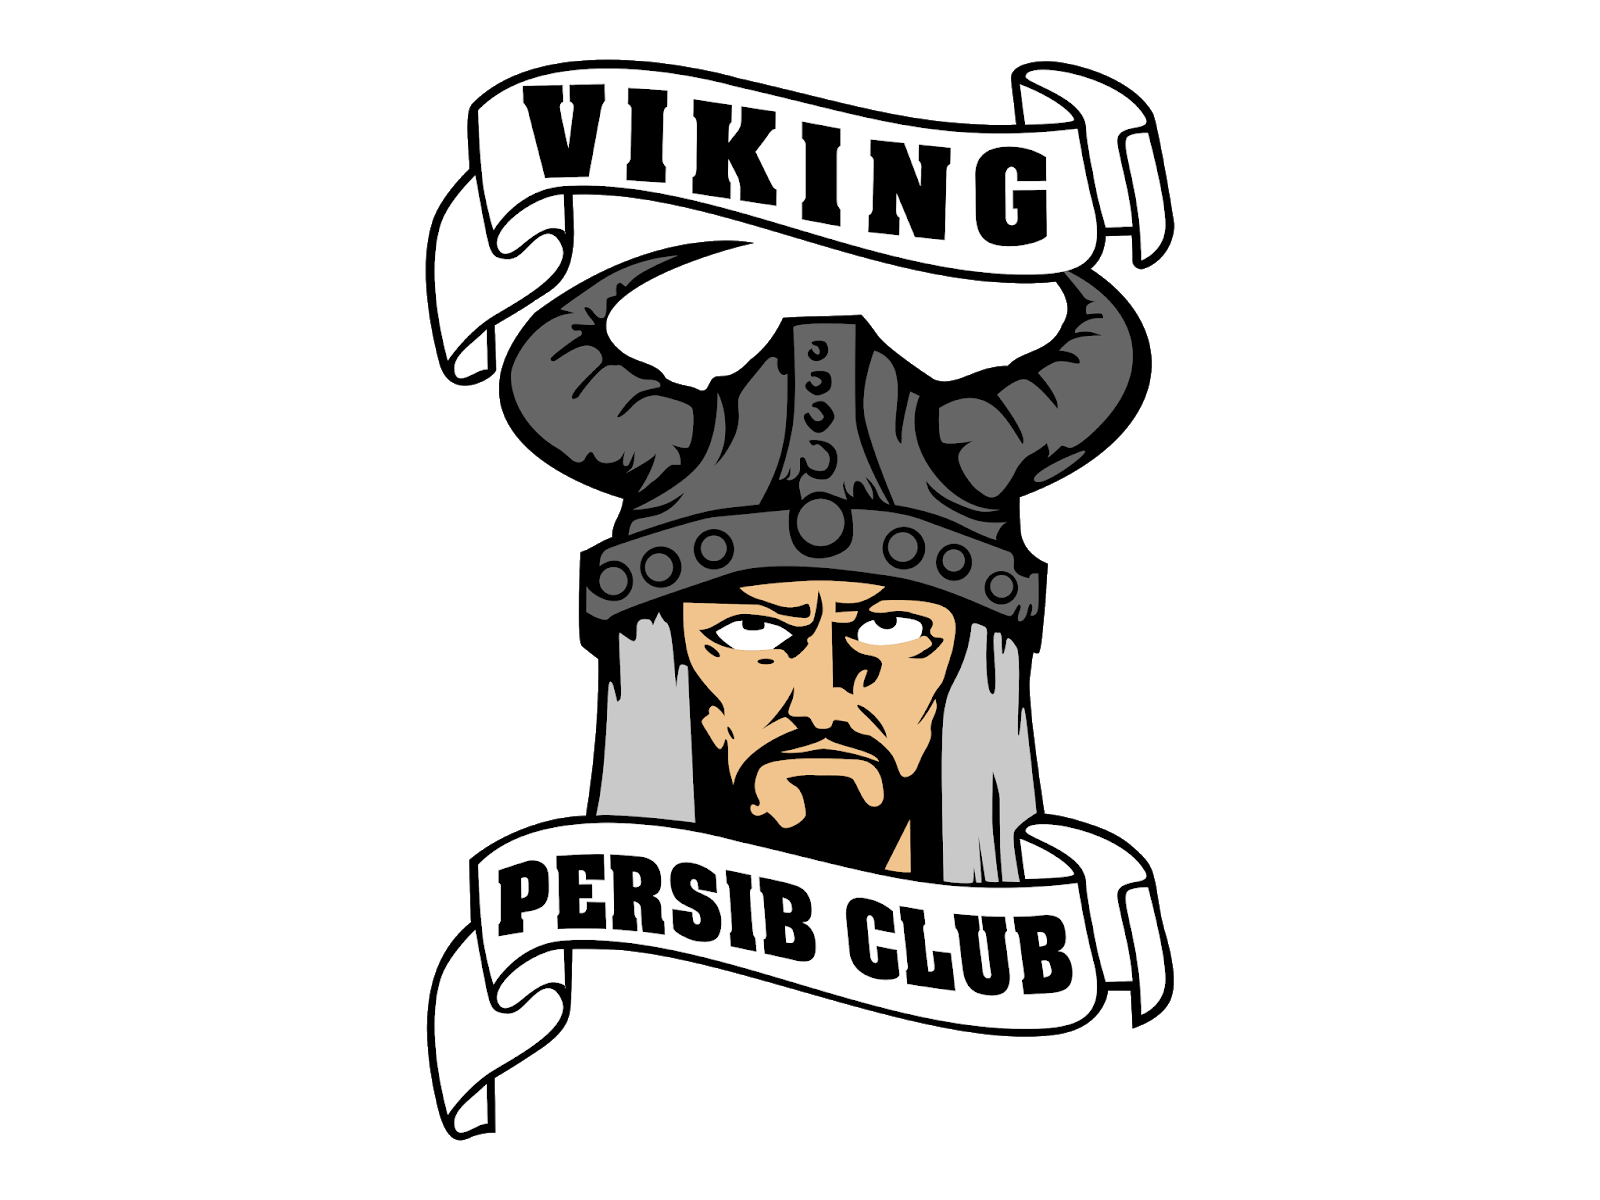 logo viking persib png